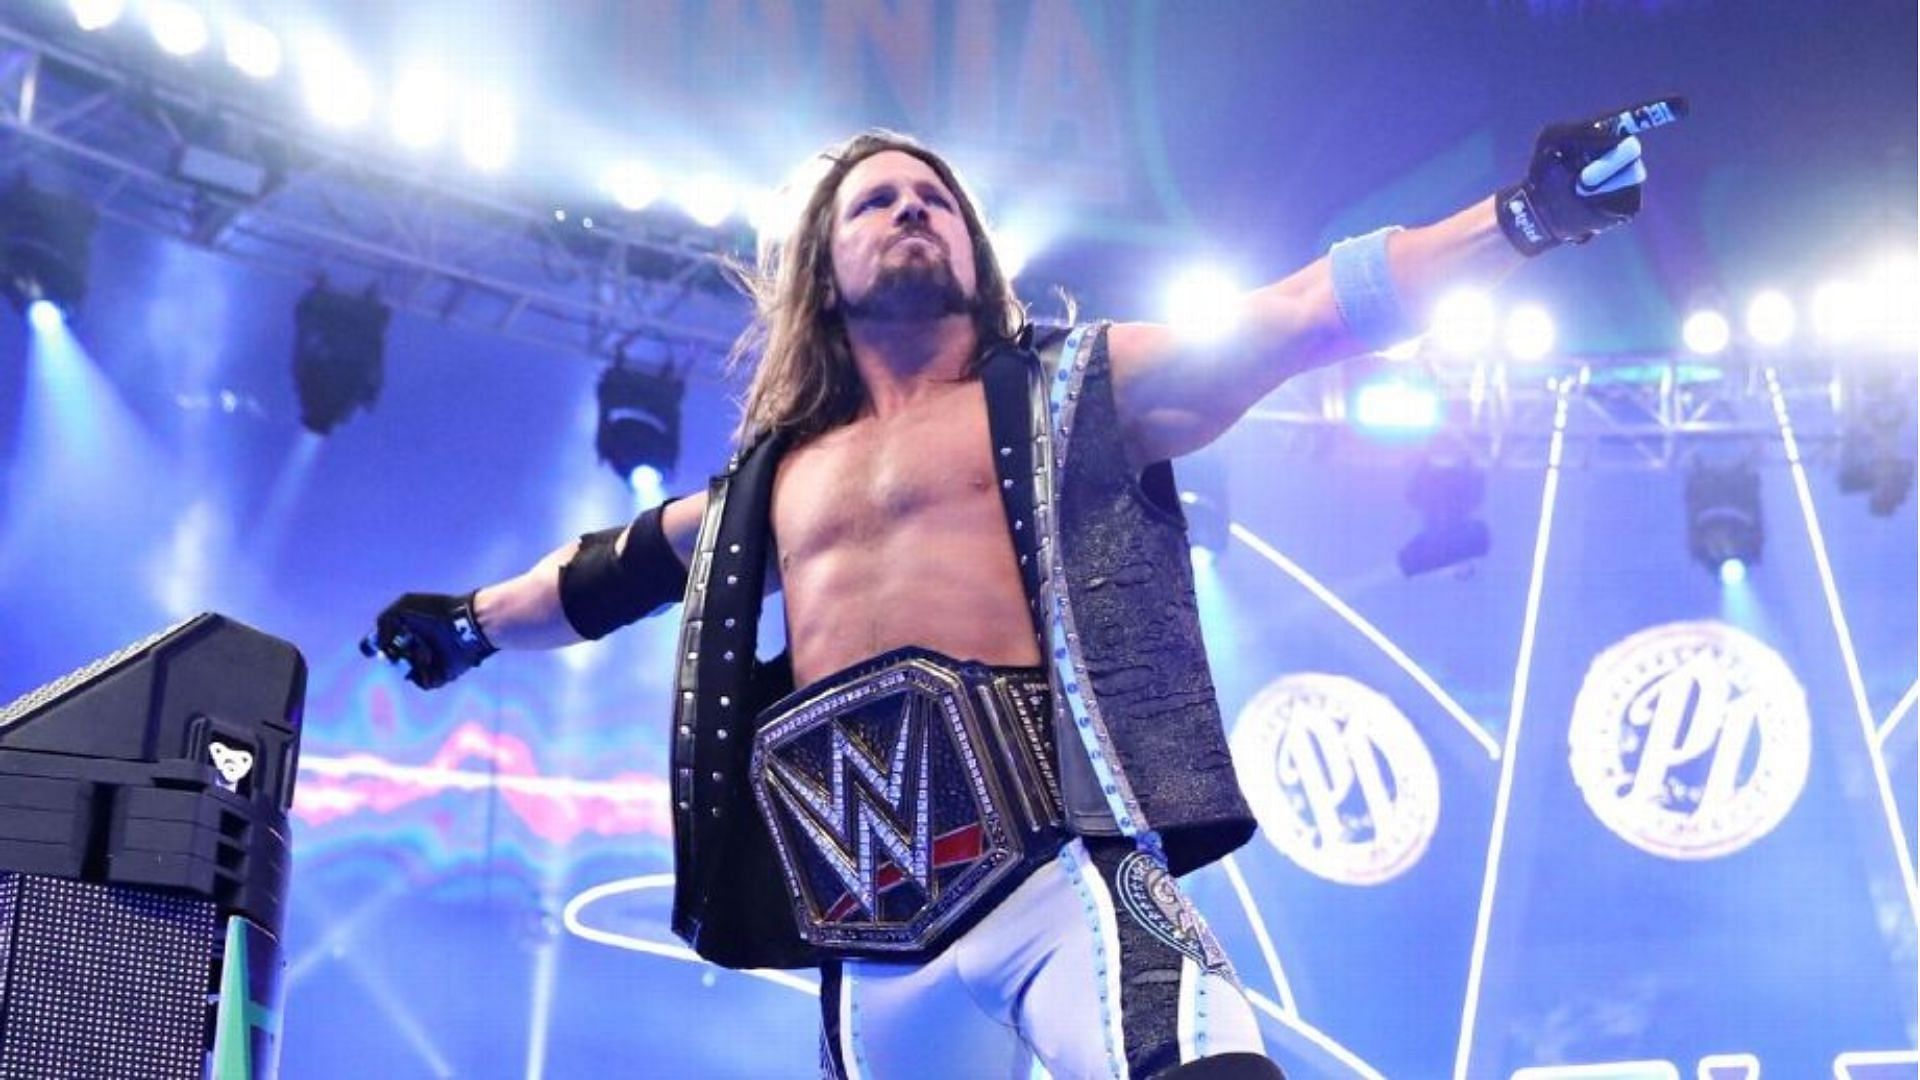 Two-time WWE Champion AJ Styles